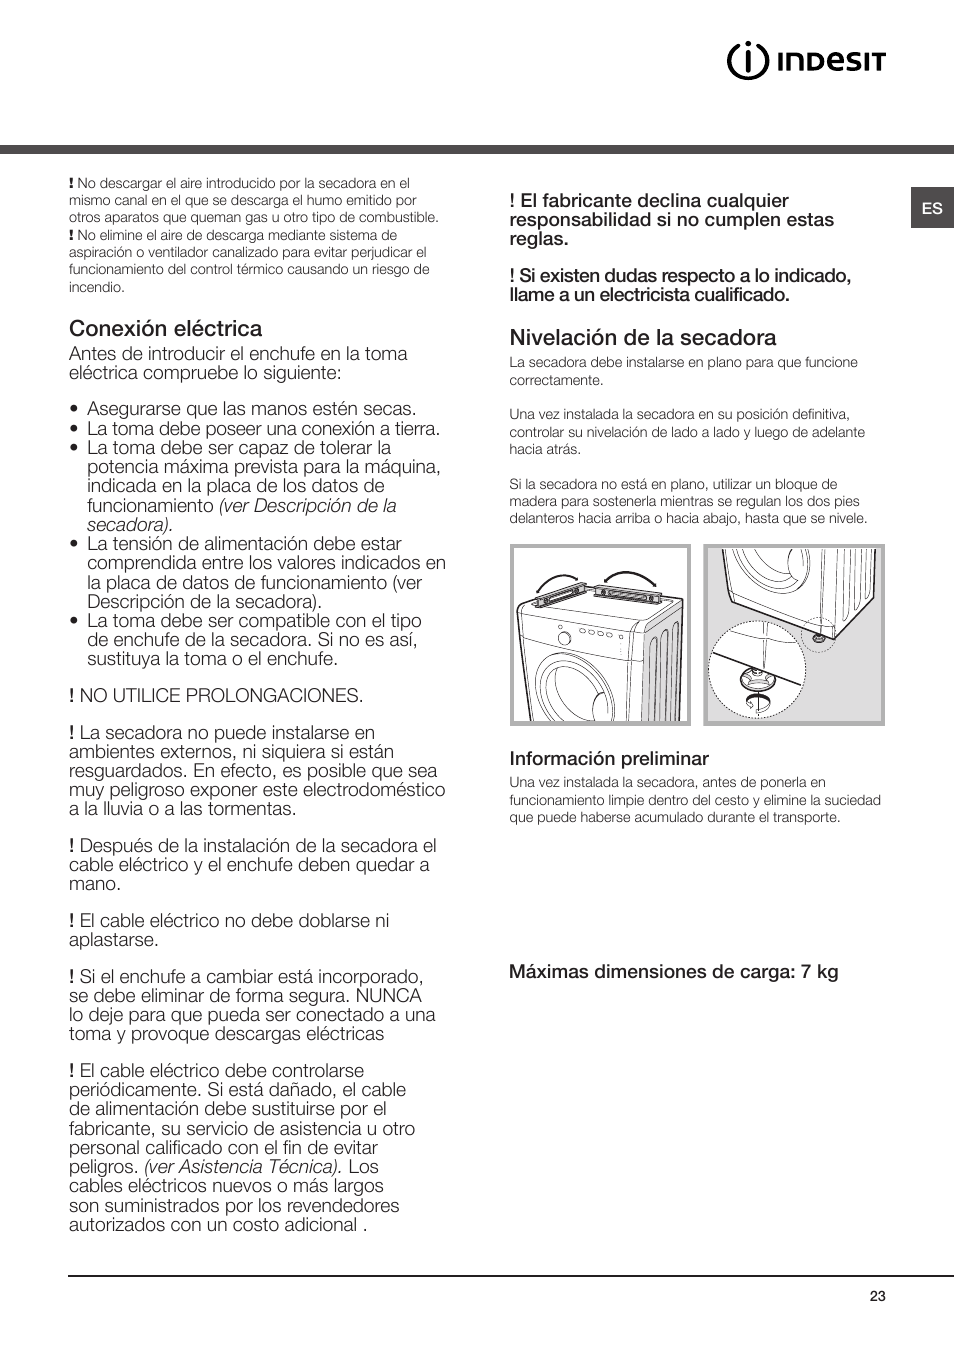 Instalación, Dónde instalar la secadora, Conexión eléctrica | Indesit IDV-75 -(EU) User Manual | Page 23 / 70 | Original mode